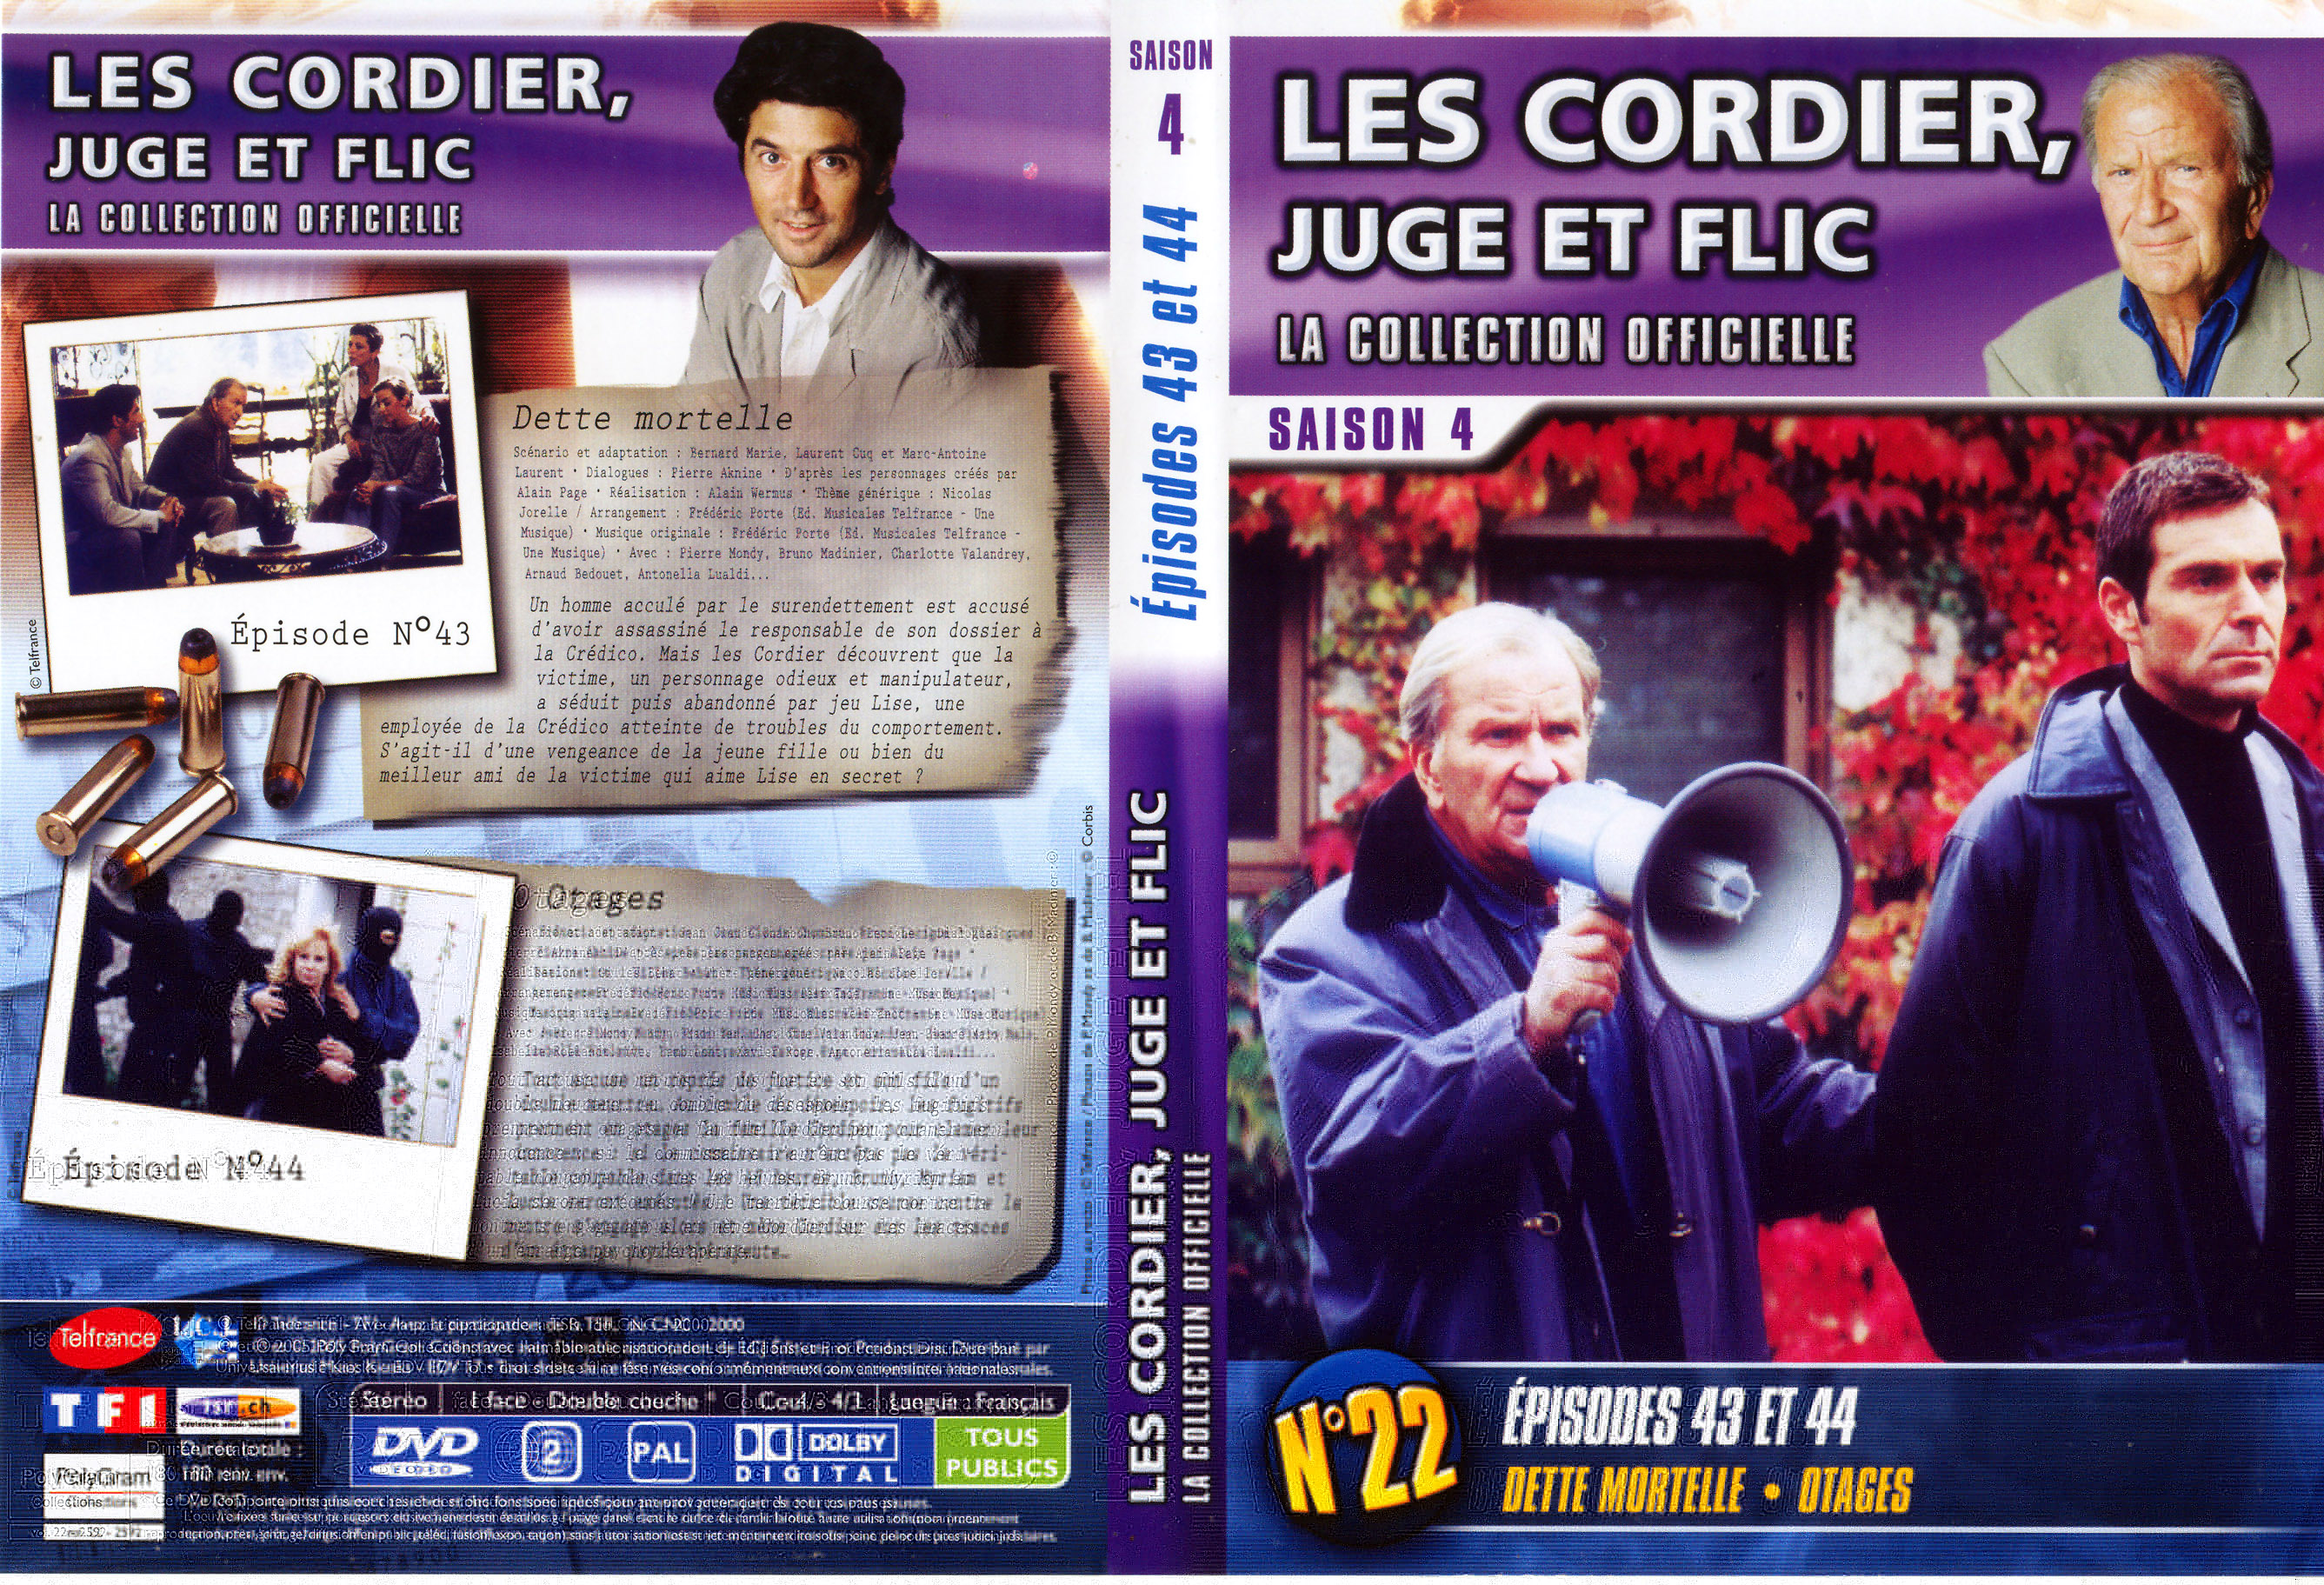 Jaquette DVD Les cordier juge et flic Saison 4 vol 22